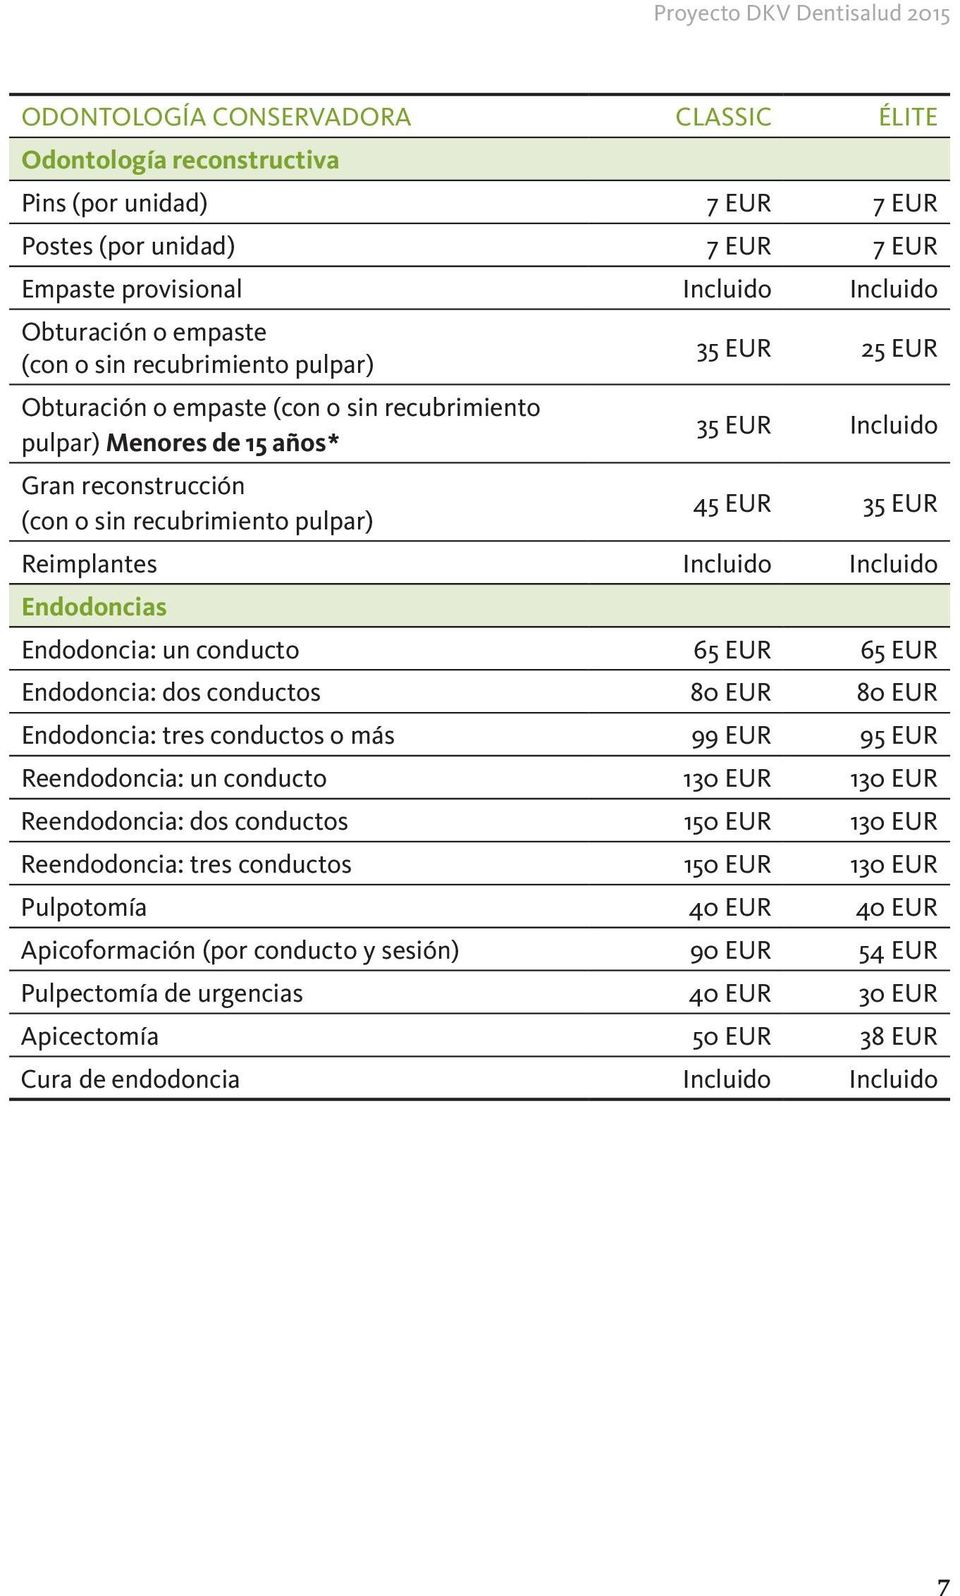 Reimplantes Incluido Incluido Endodoncias Endodoncia: un conducto 65 EUR 65 EUR Endodoncia: dos conductos 80 EUR 80 EUR Endodoncia: tres conductos o más 99 EUR 95 EUR Reendodoncia: un conducto 130